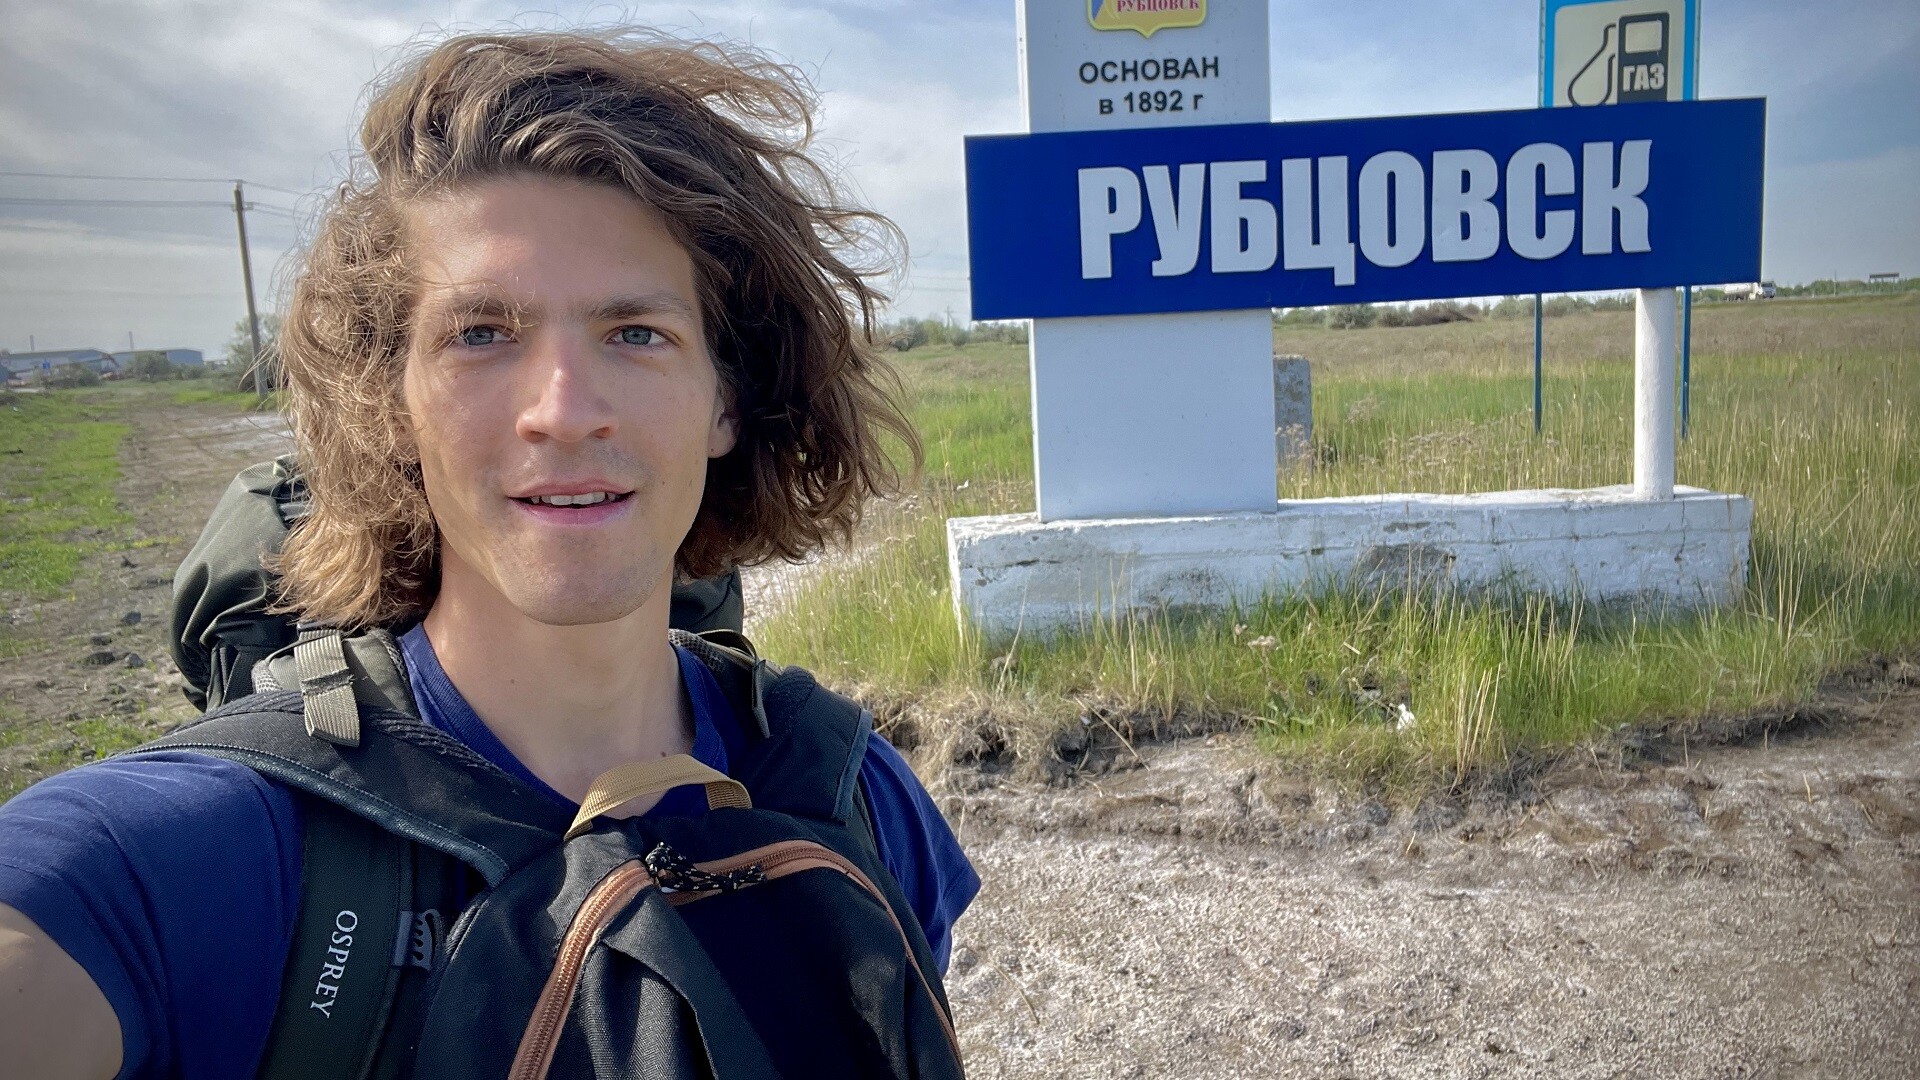 Lo studente svizzero Etienne Steinemann davanti al cartello della città di Rubtsovsk, nel Territorio dell’Altaj, da dove ha iniziato il suo lungo autostop che lo ha portato fino a Vladivostok